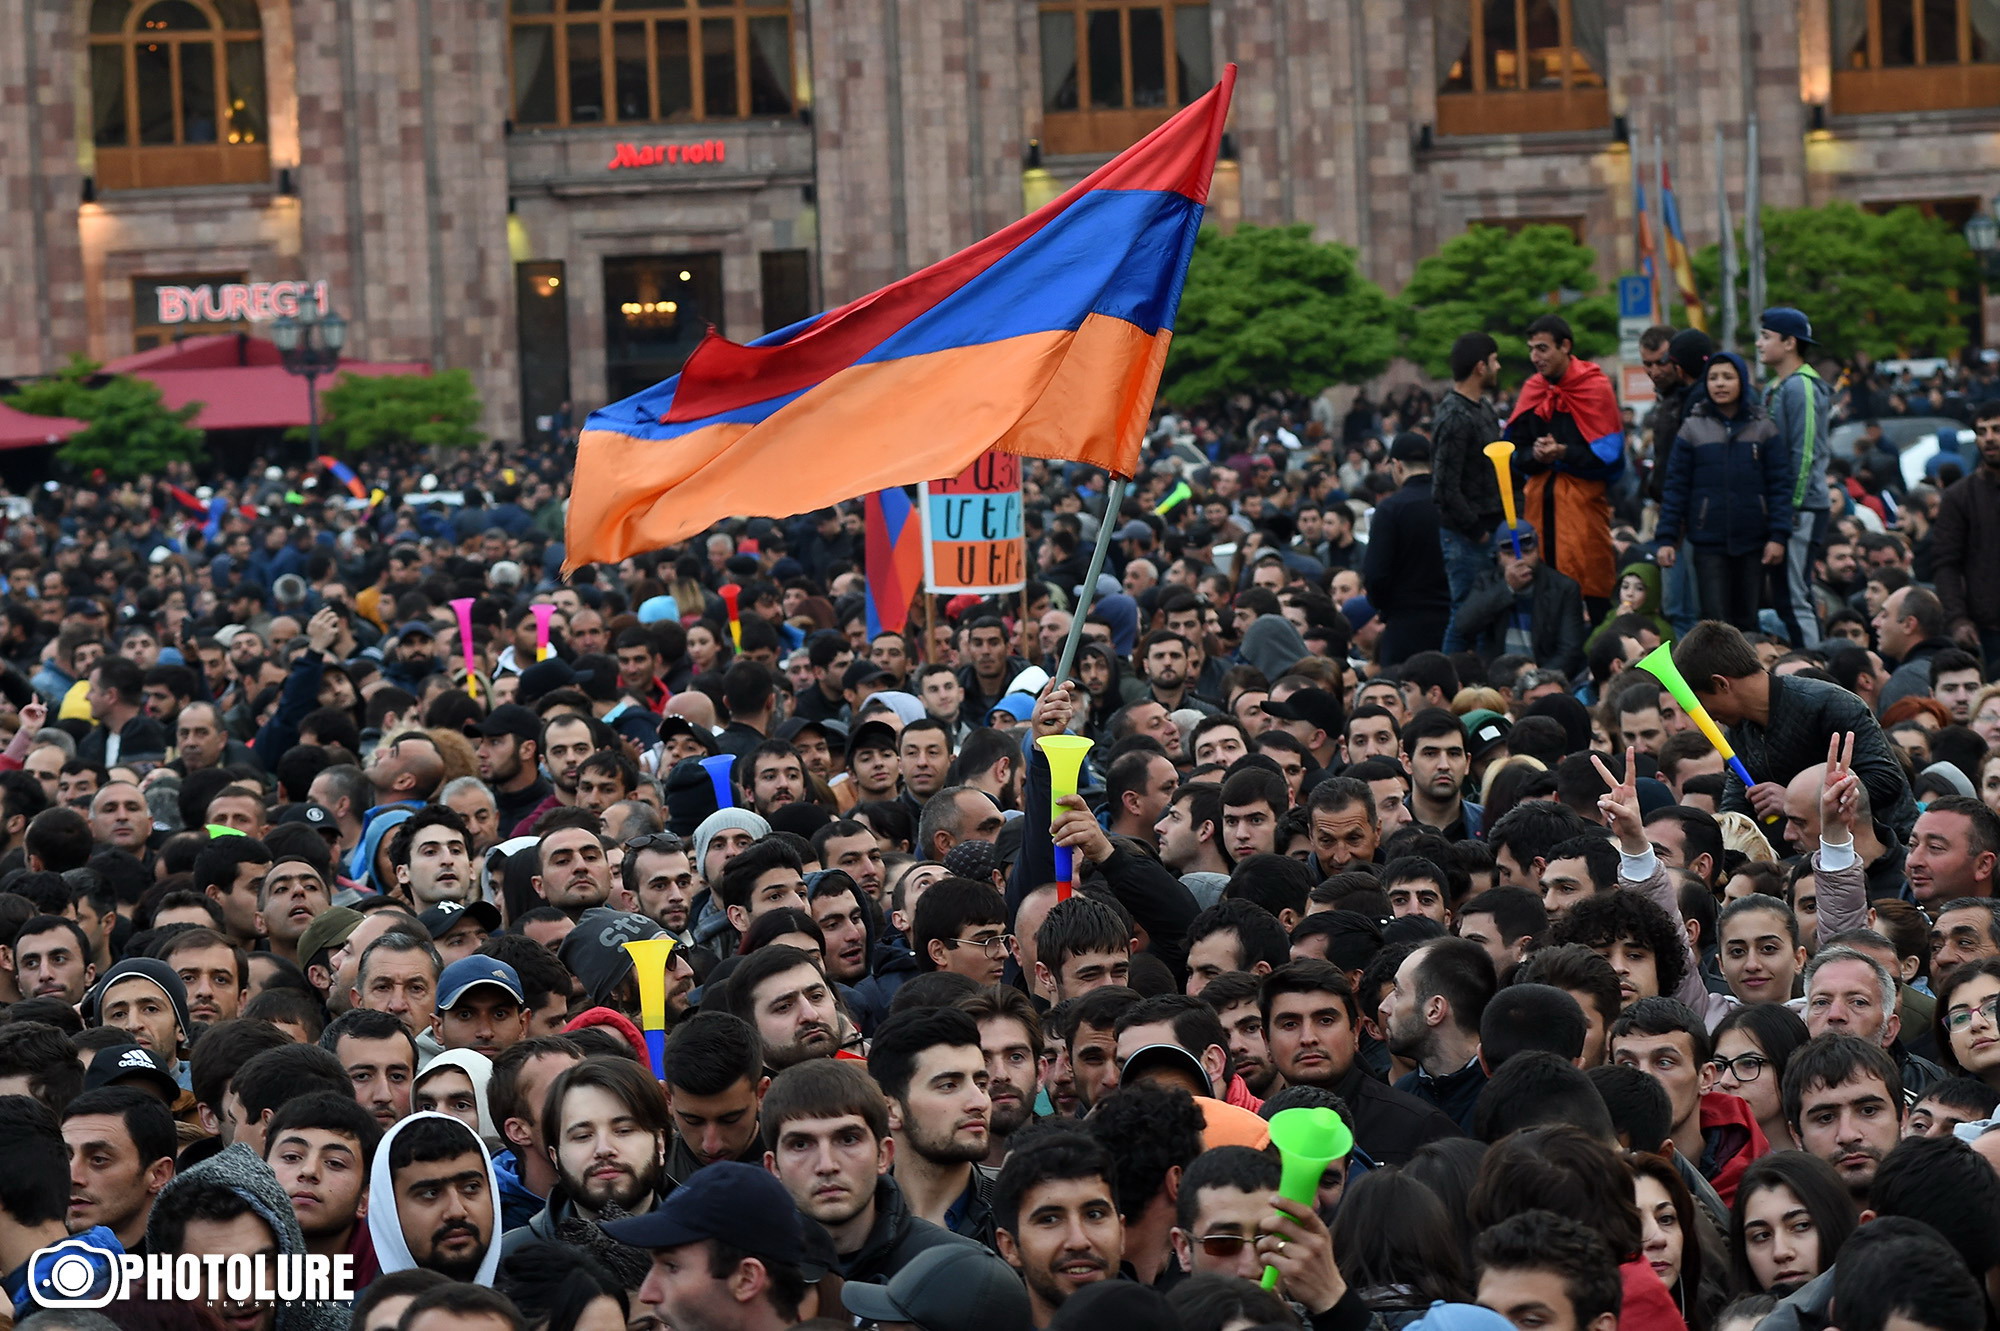 Численность населения армян